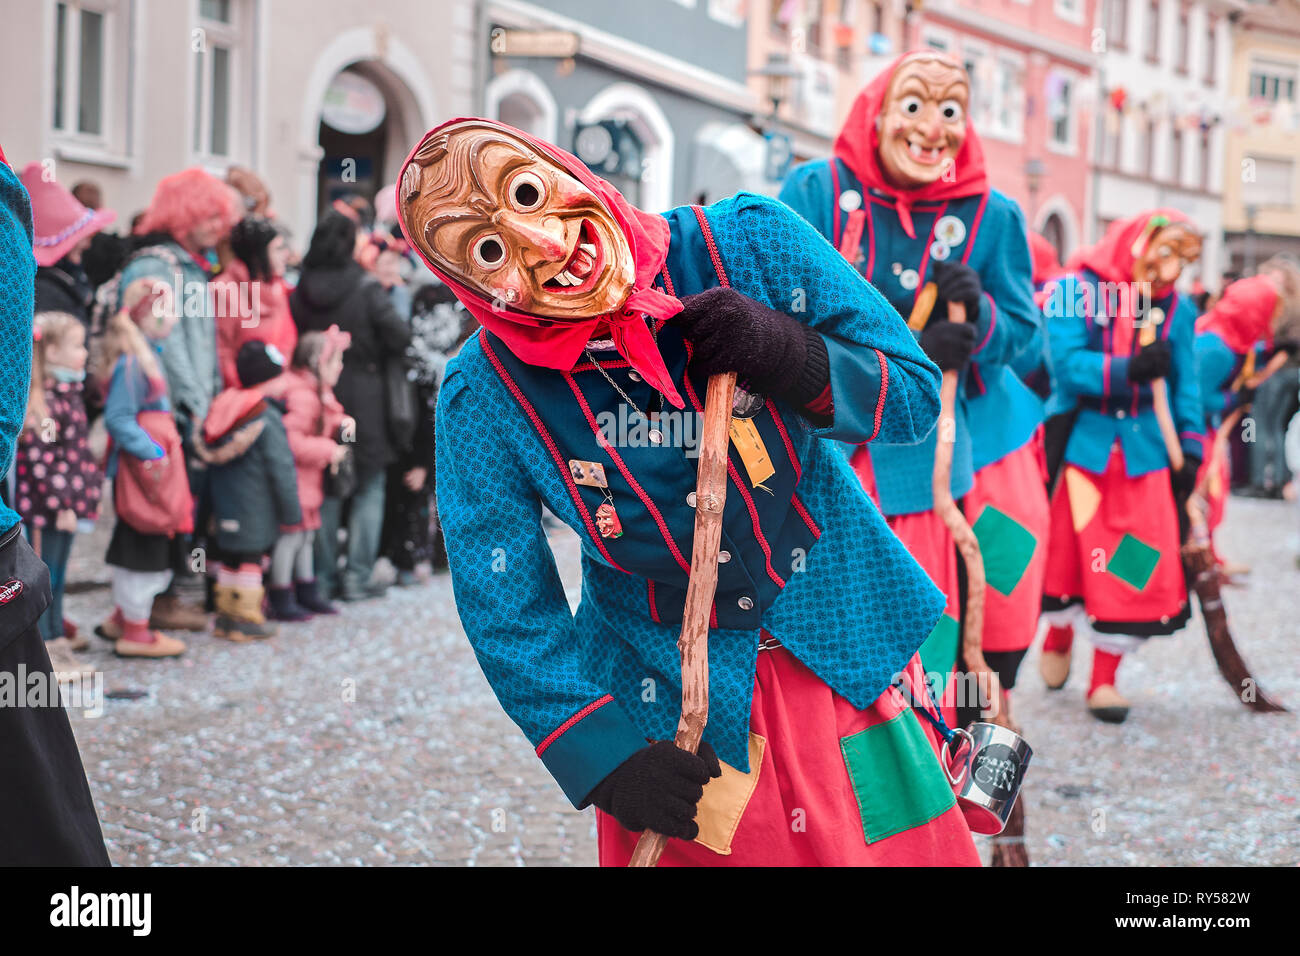 Fee Hexe in roten und blauen Kostüm mit verbogenen Haltung. Straßenkarneval  im südlichen Deutschland - Schwarzwald Stockfotografie - Alamy